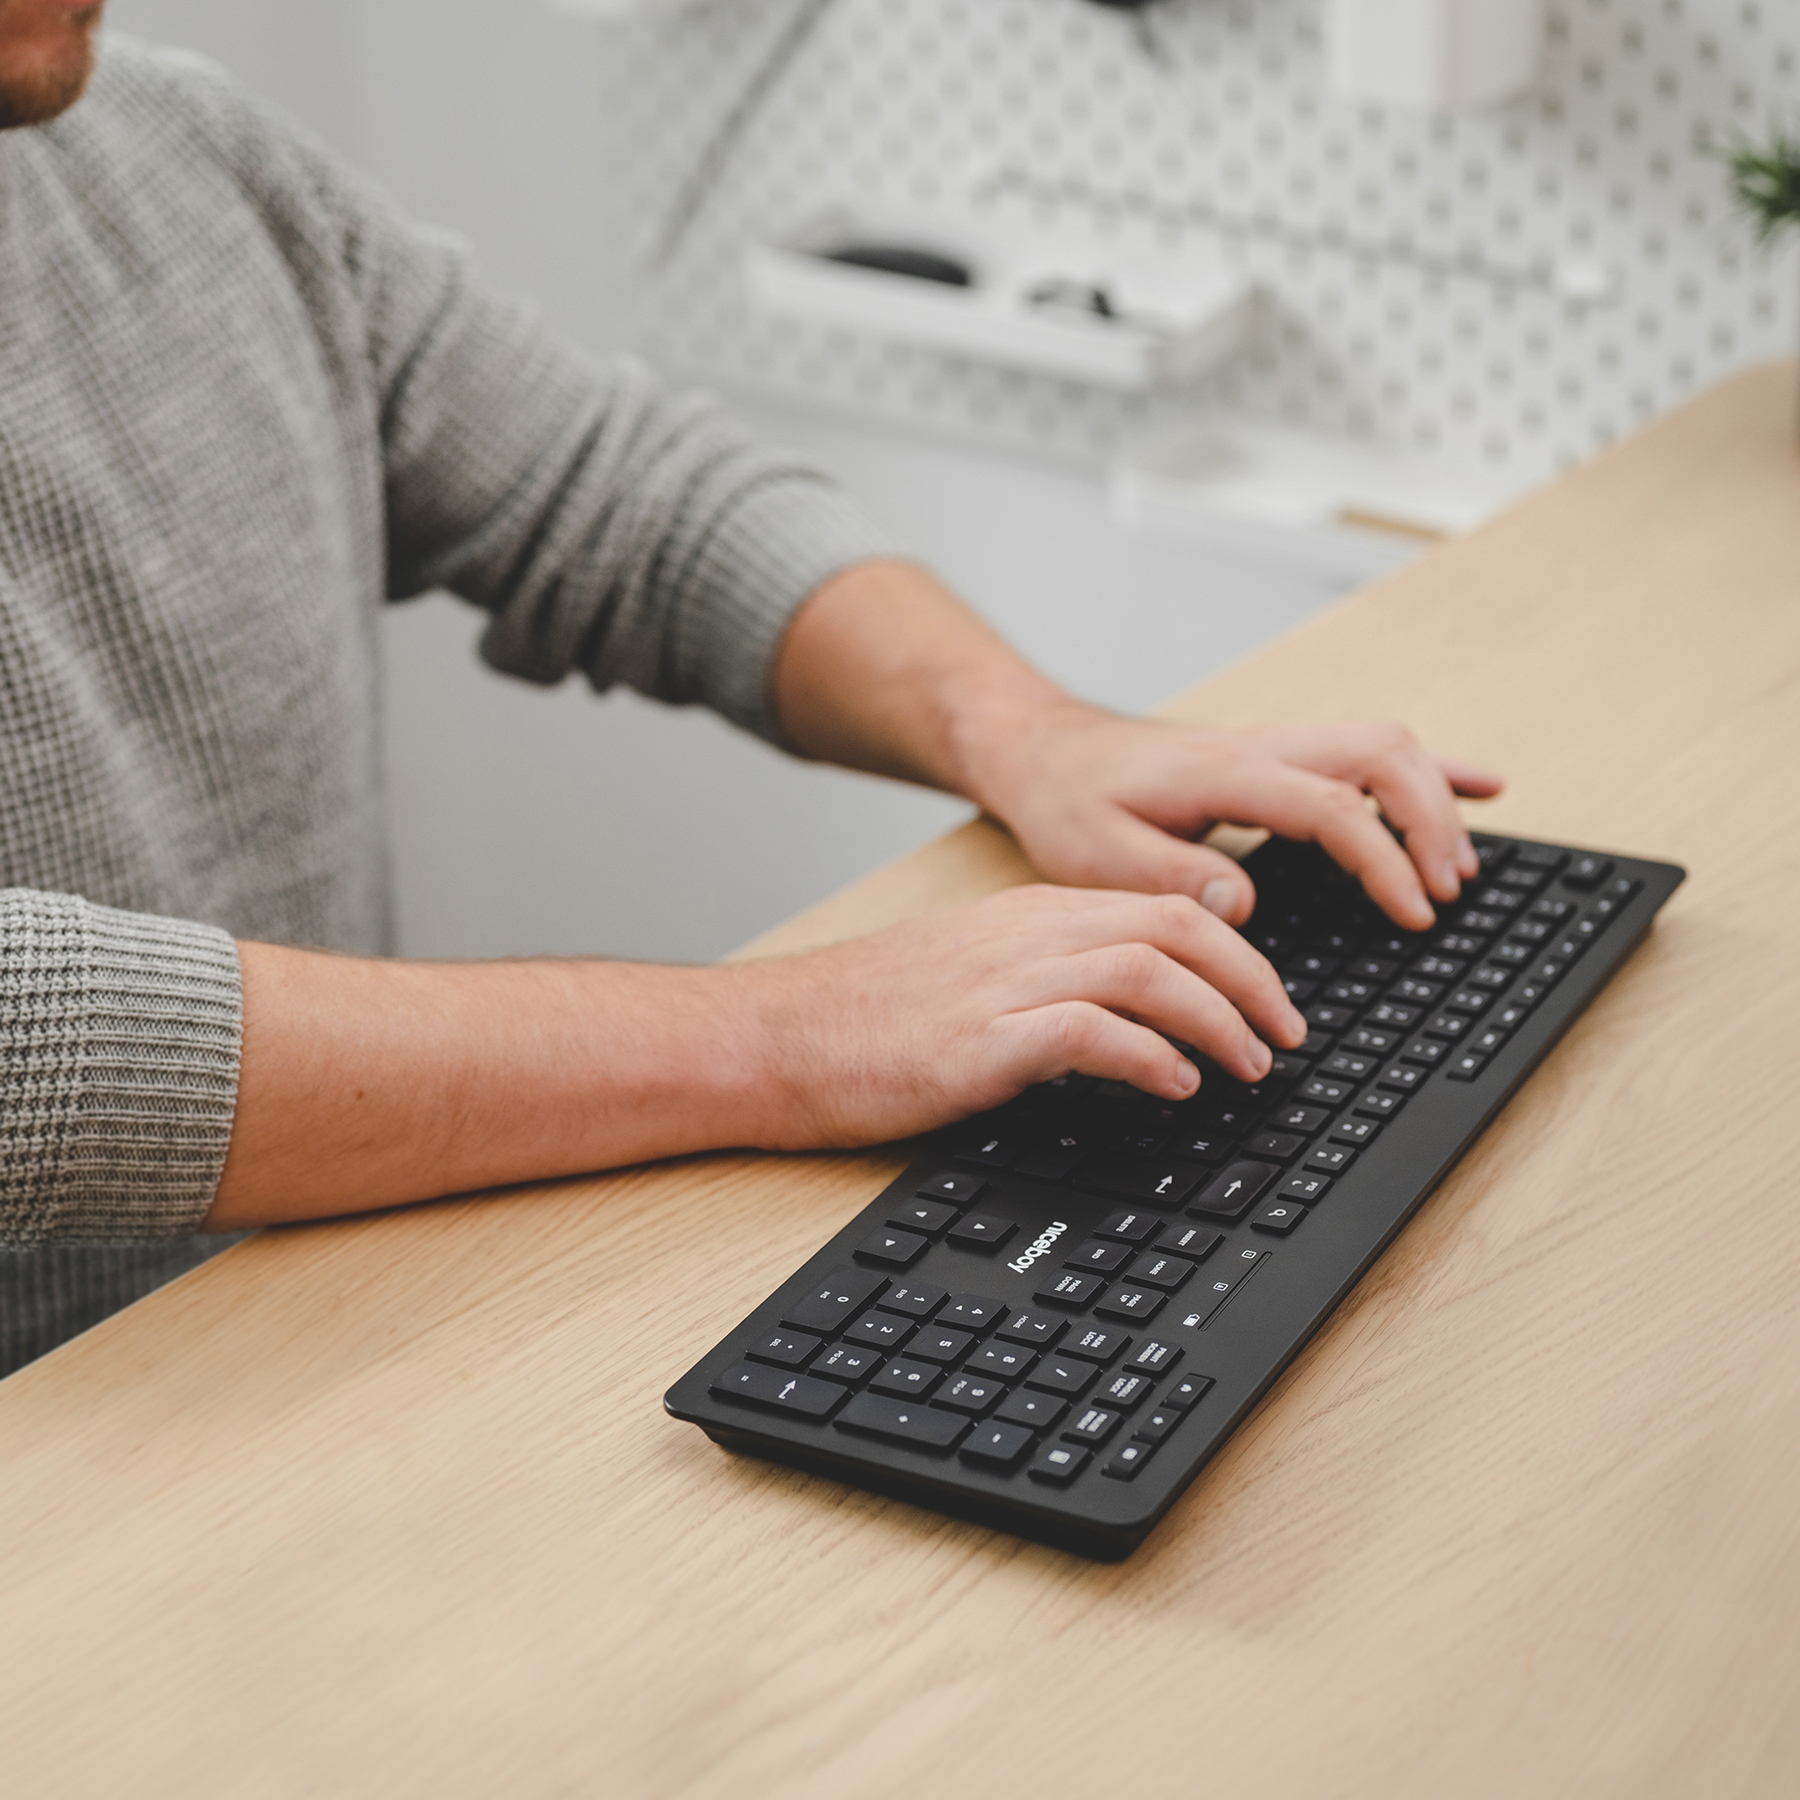 Bezdrátová klávesnice Niceboy Office K10 vám pomůže navýšit produktivitu práce i bez nepřehledné změti kabelů.